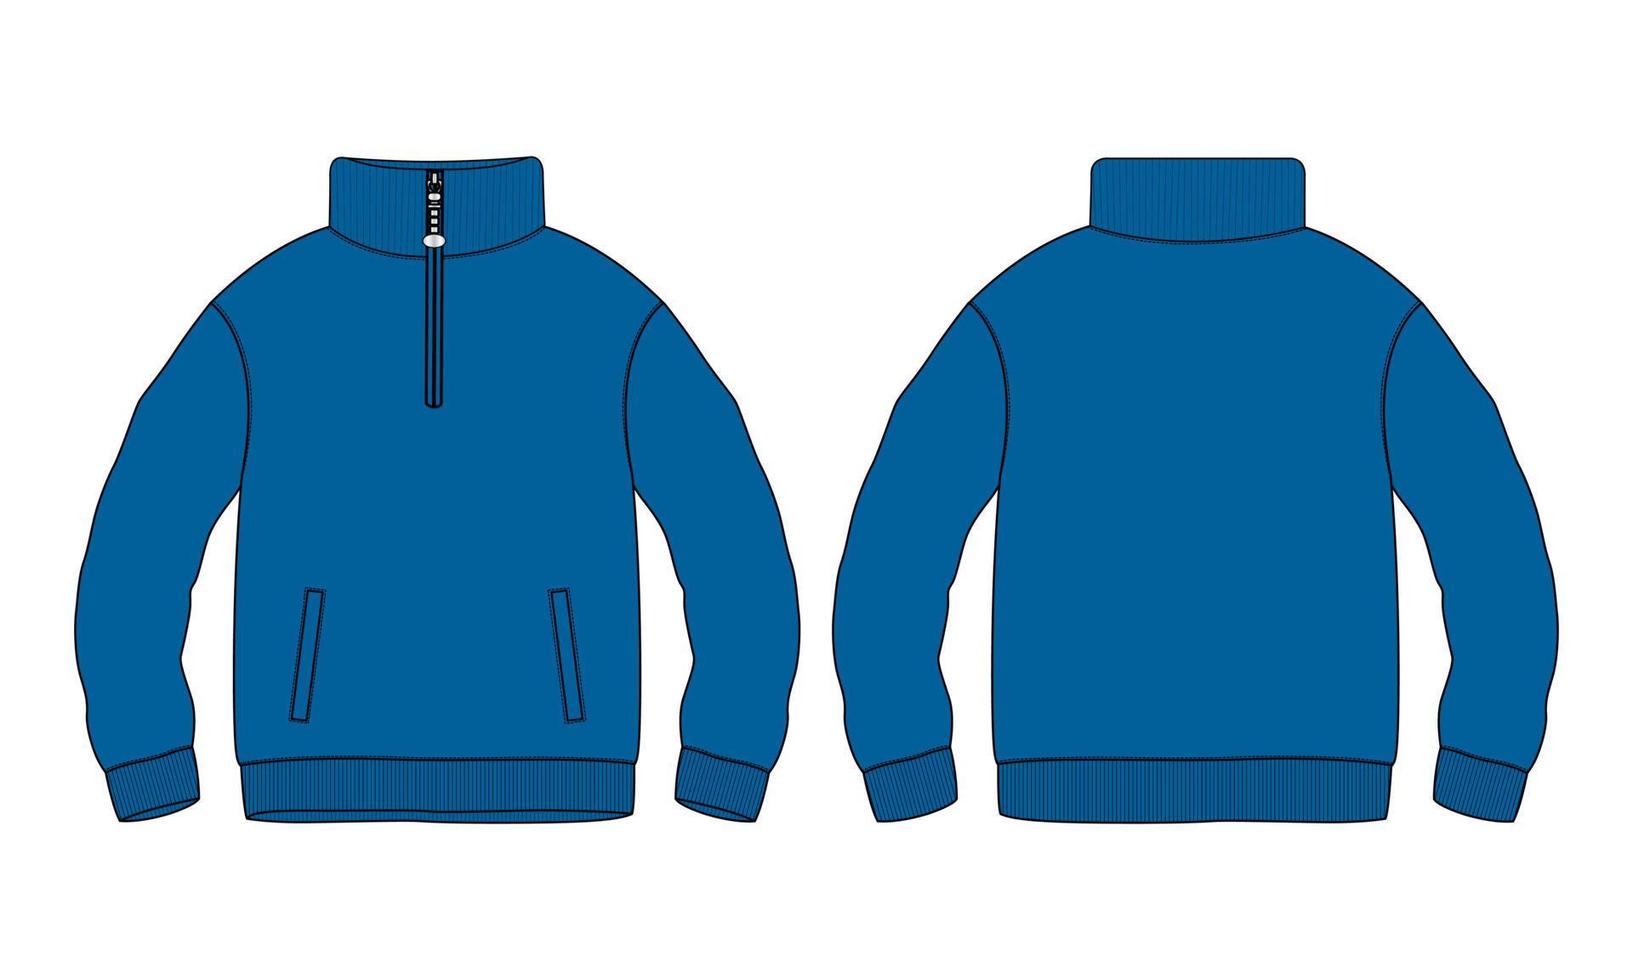 camisa de algodão jaqueta de lã moletom técnico moda desenho plano ilustração vetorial modelo de cor azul vistas frontal e traseira. casaco de camisola de vestuário plano simulado isolado no fundo branco. vetor